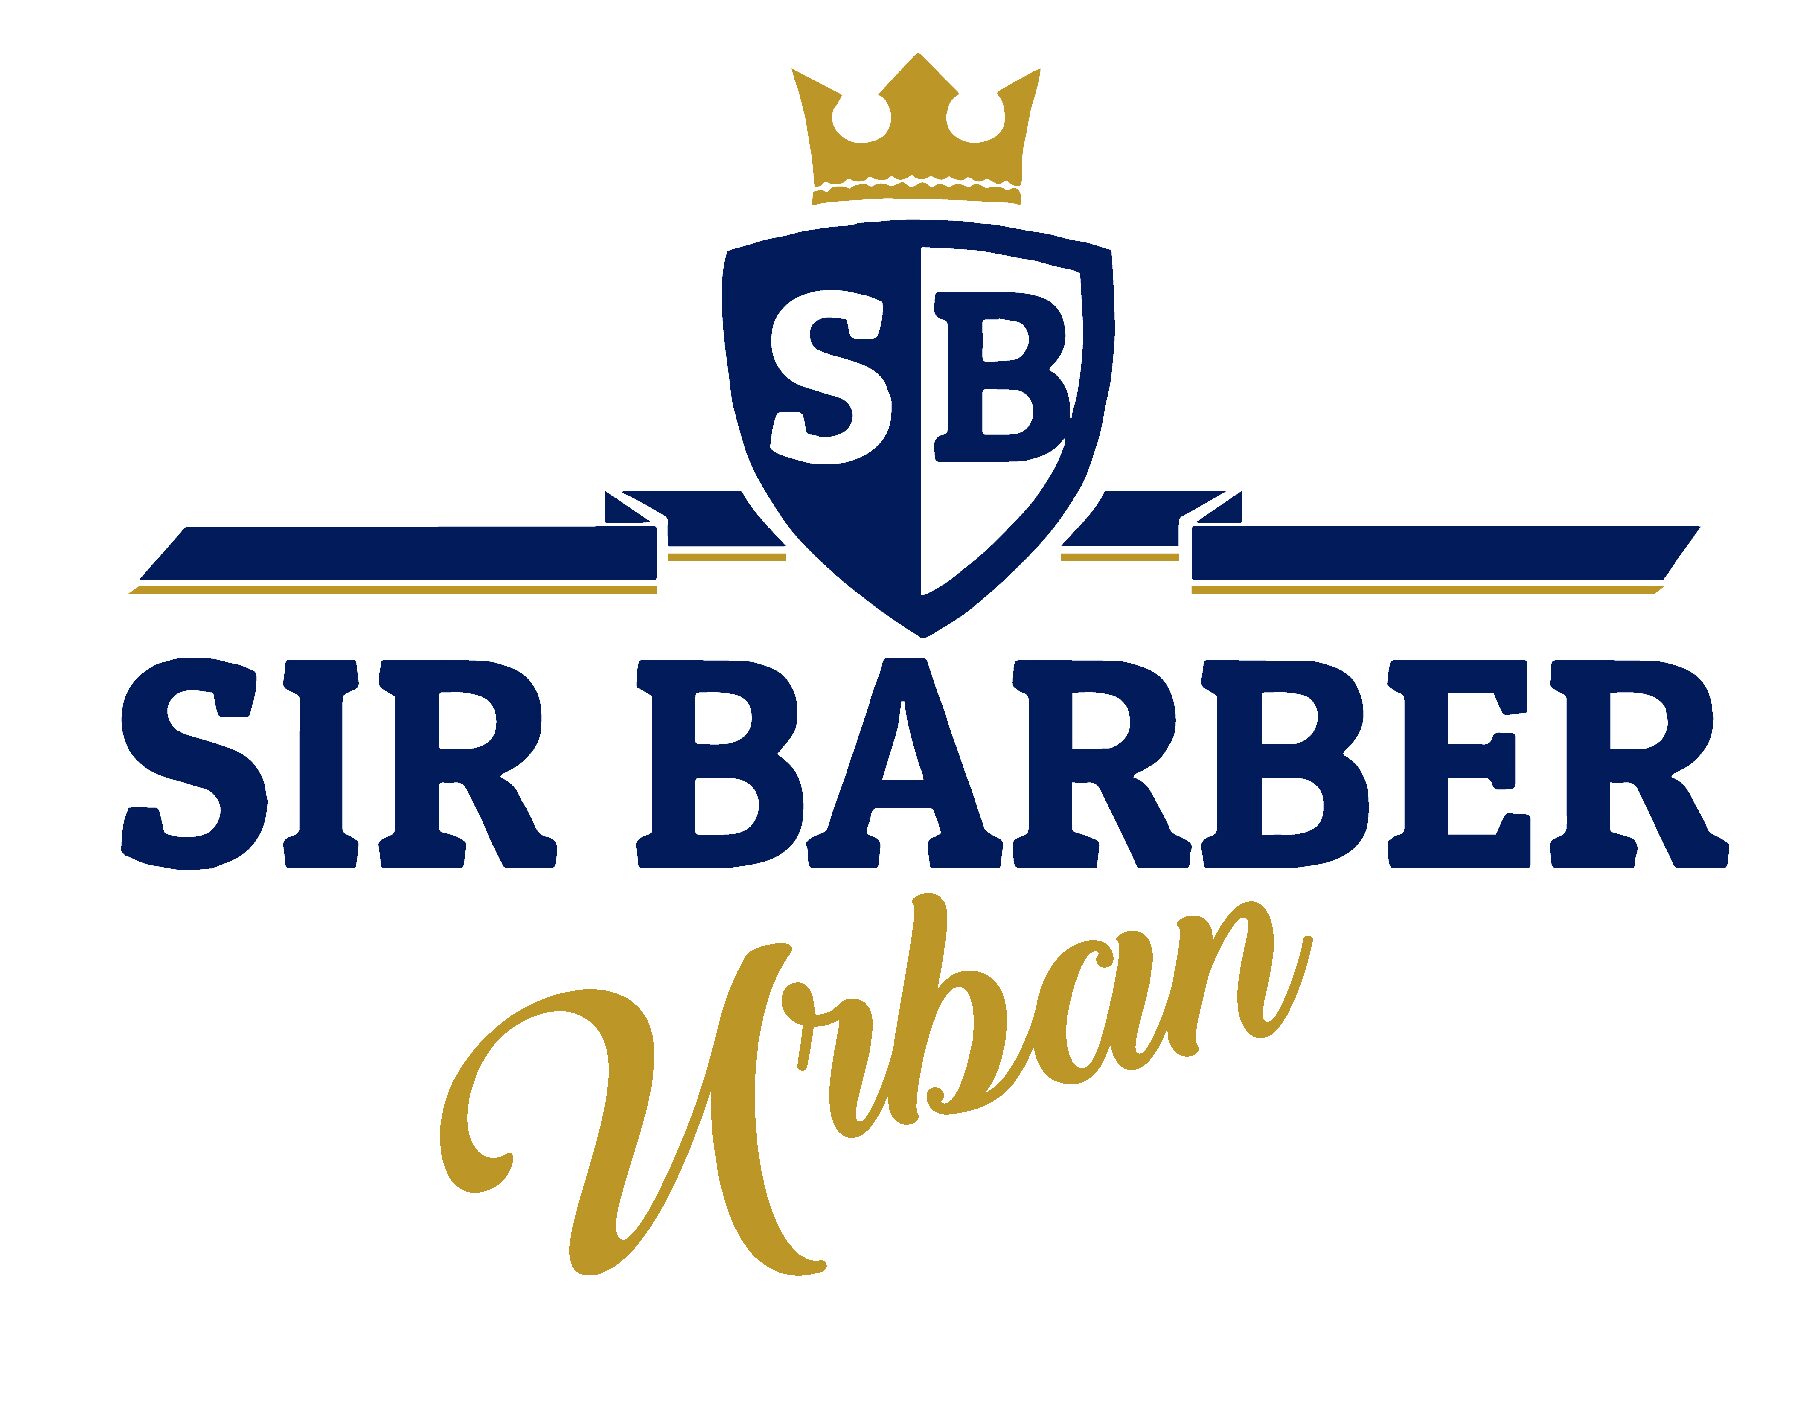 Sir Barber